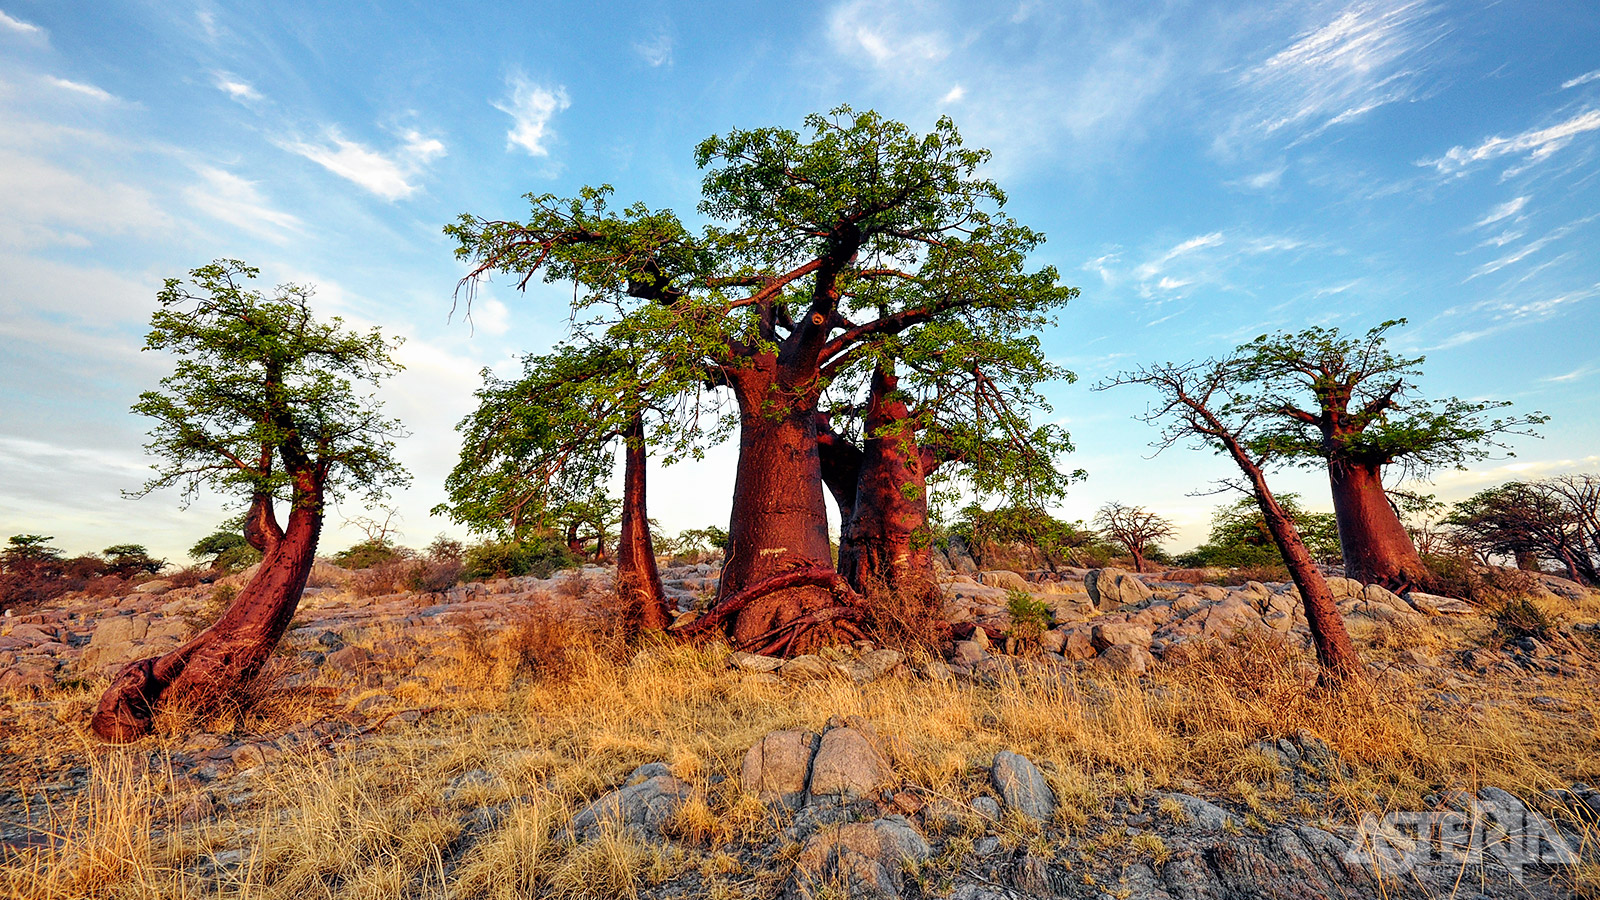 Aan de randen van de zoutpannen groeien grassen, acacia’s en af en toe een prachtige Baobab